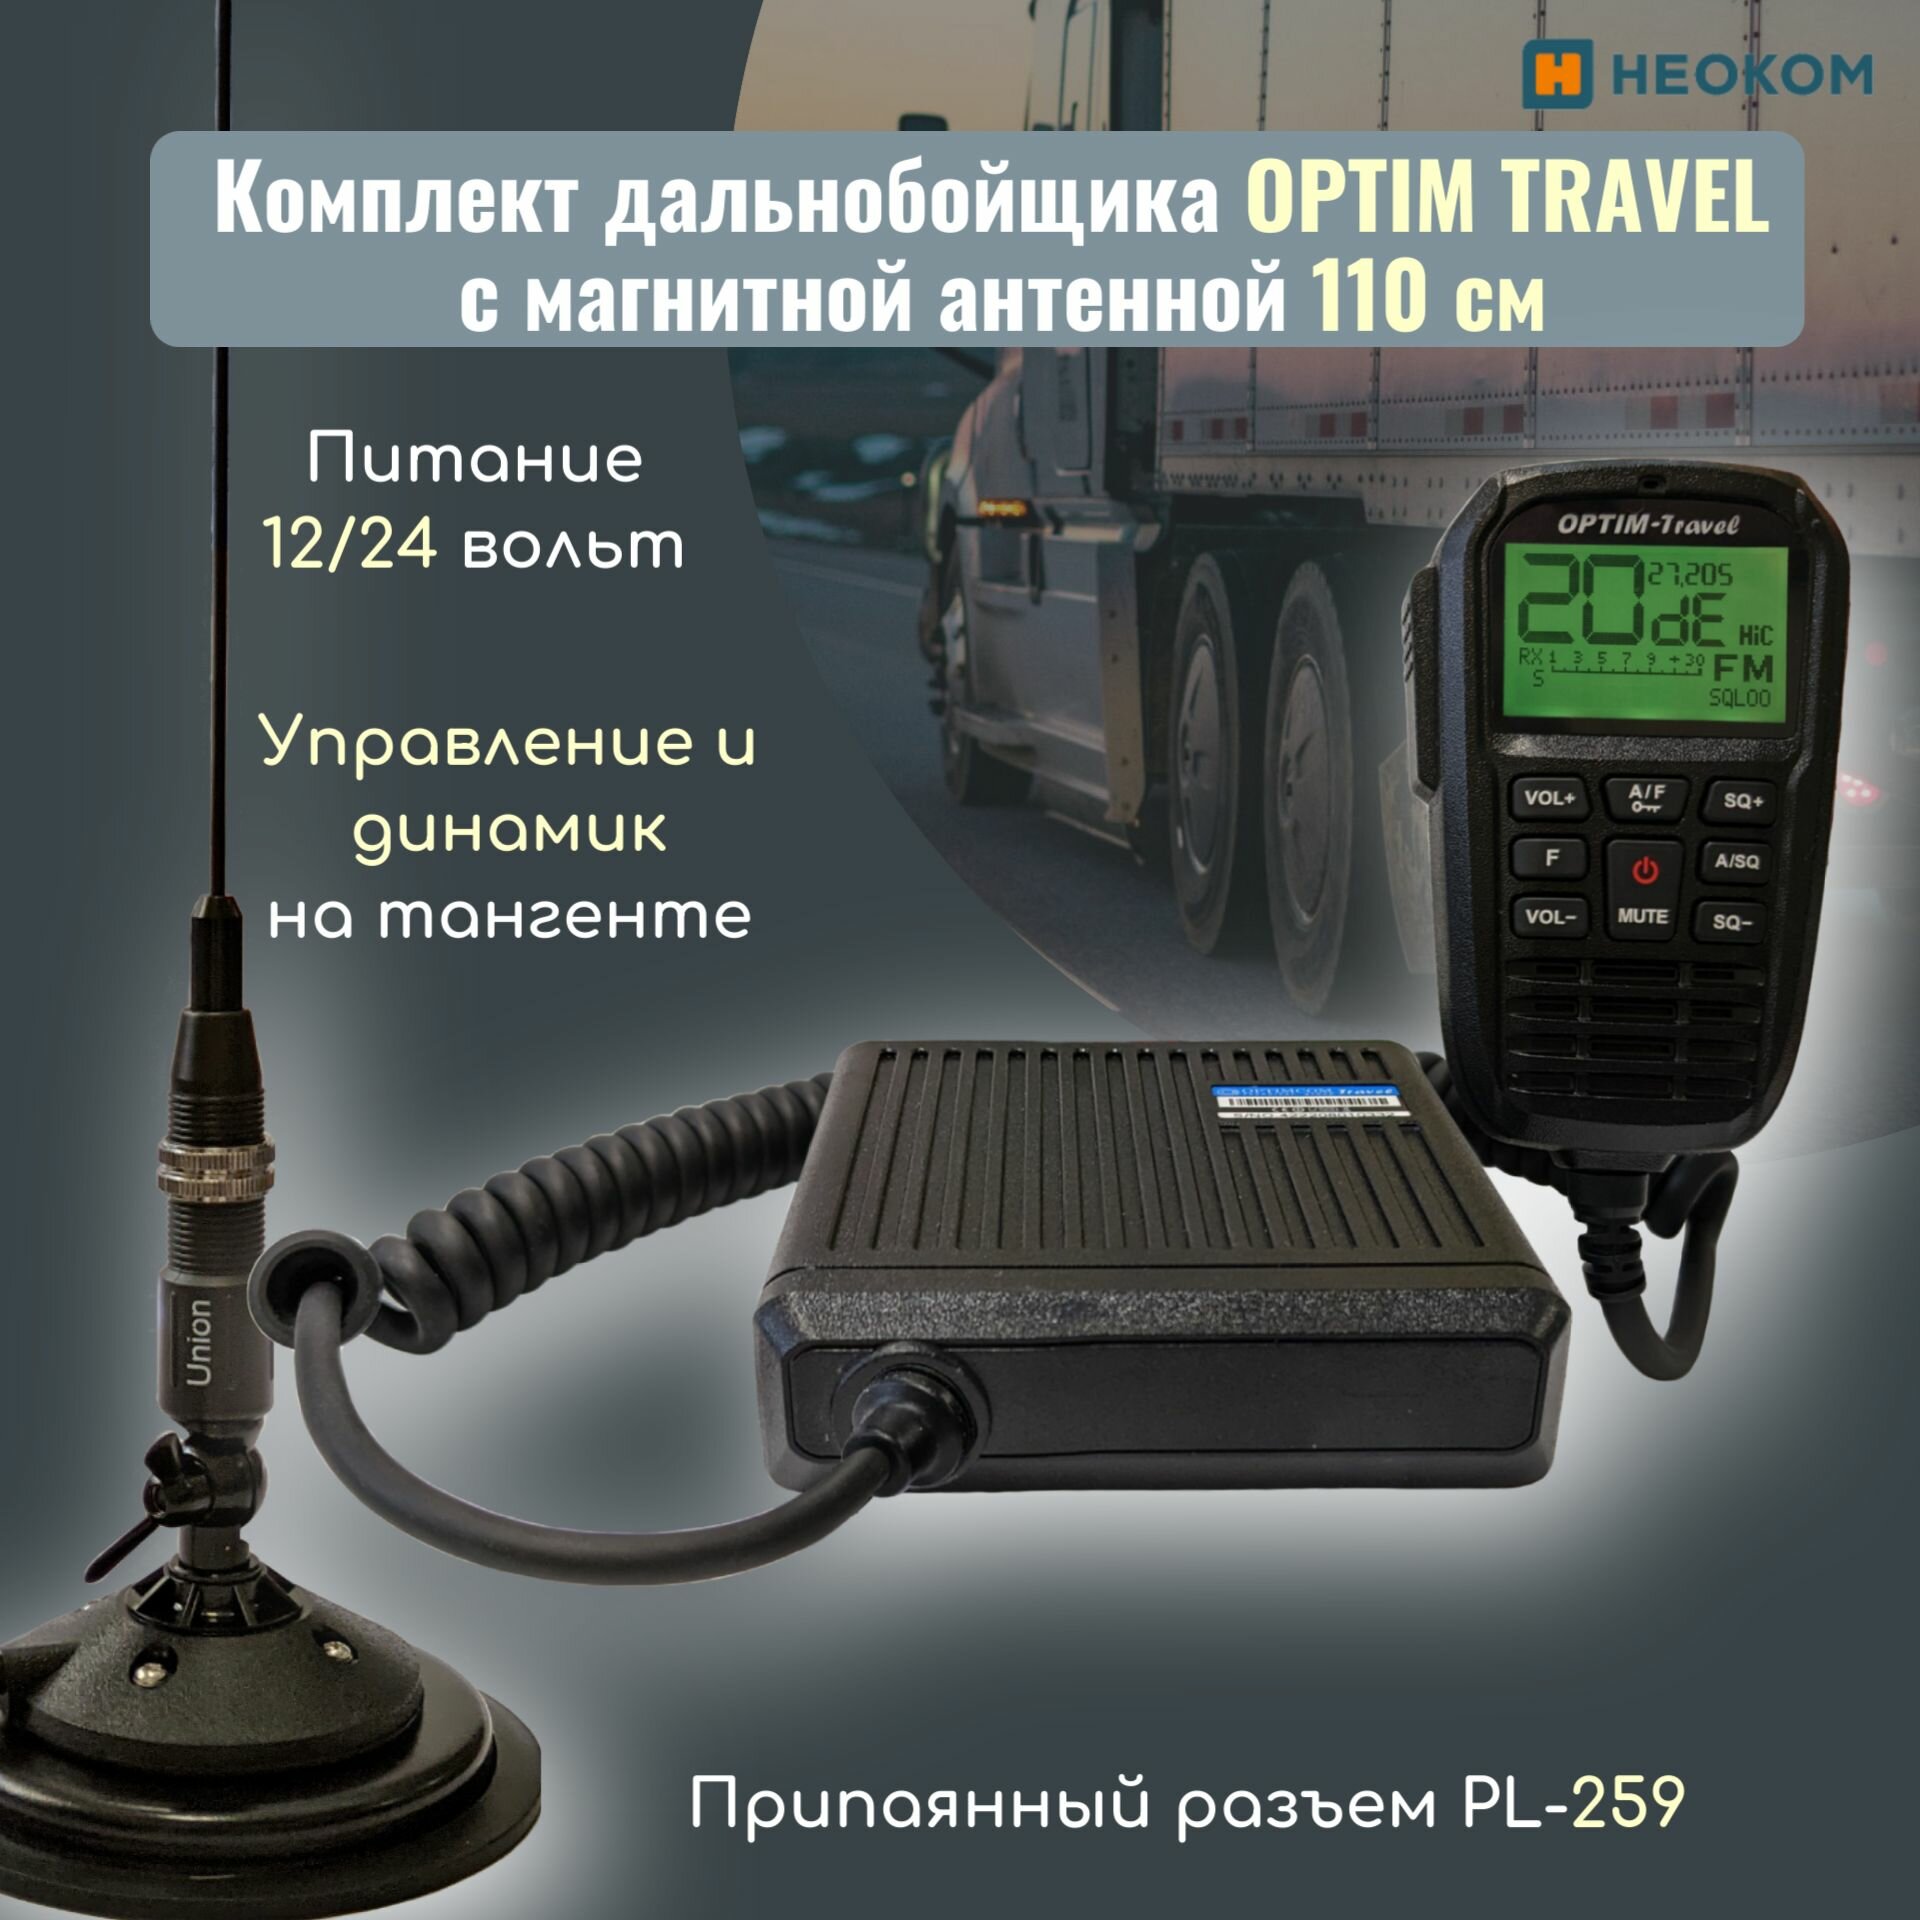 Автомобильная радиостанция Optim Travel в комплекте с магнитной антенной 1,1 метра